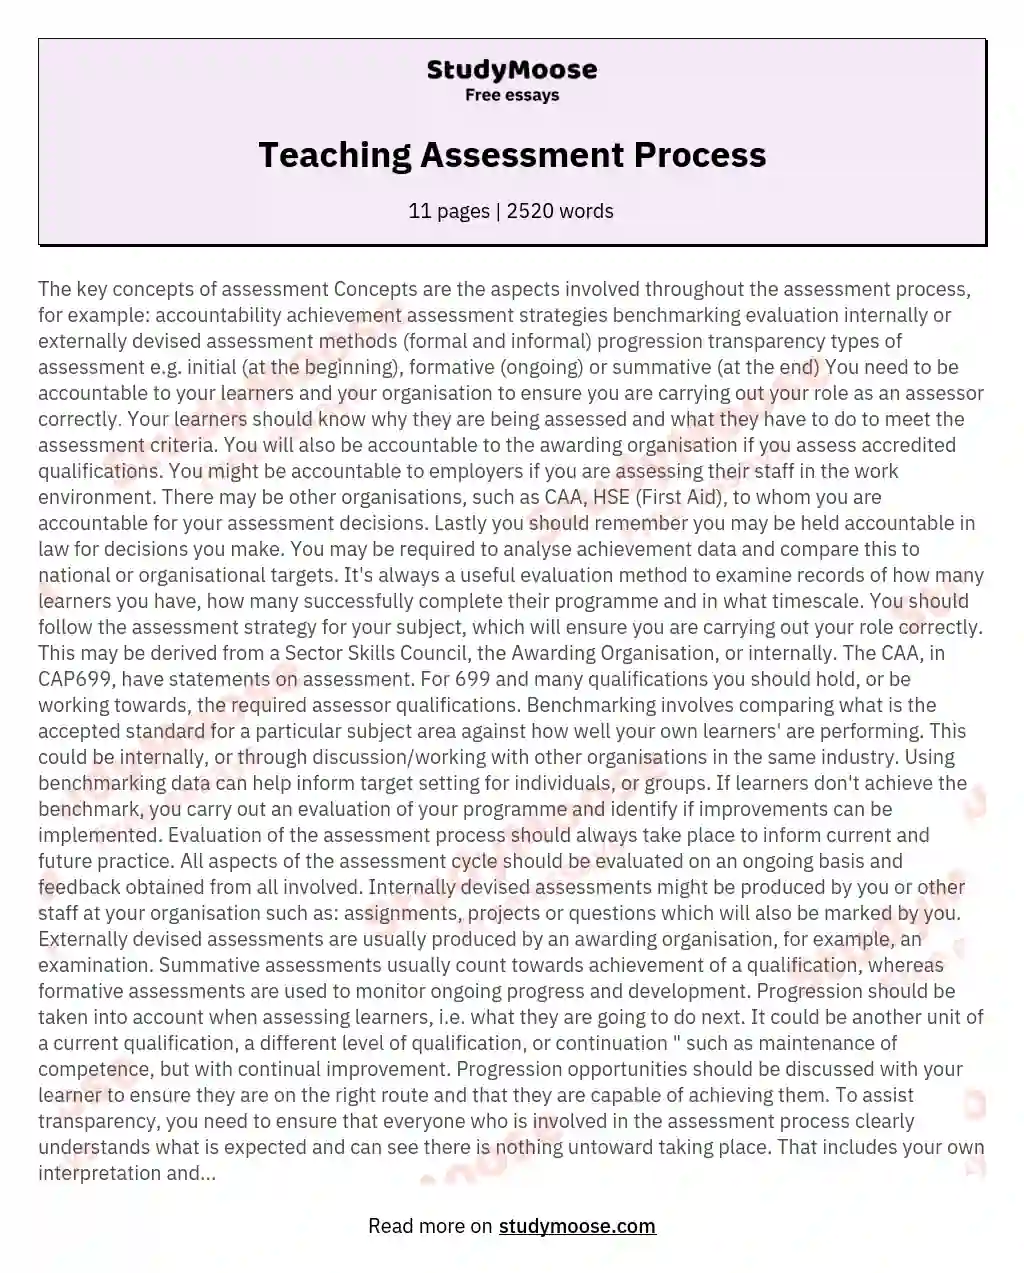 Teaching Assessment Process essay